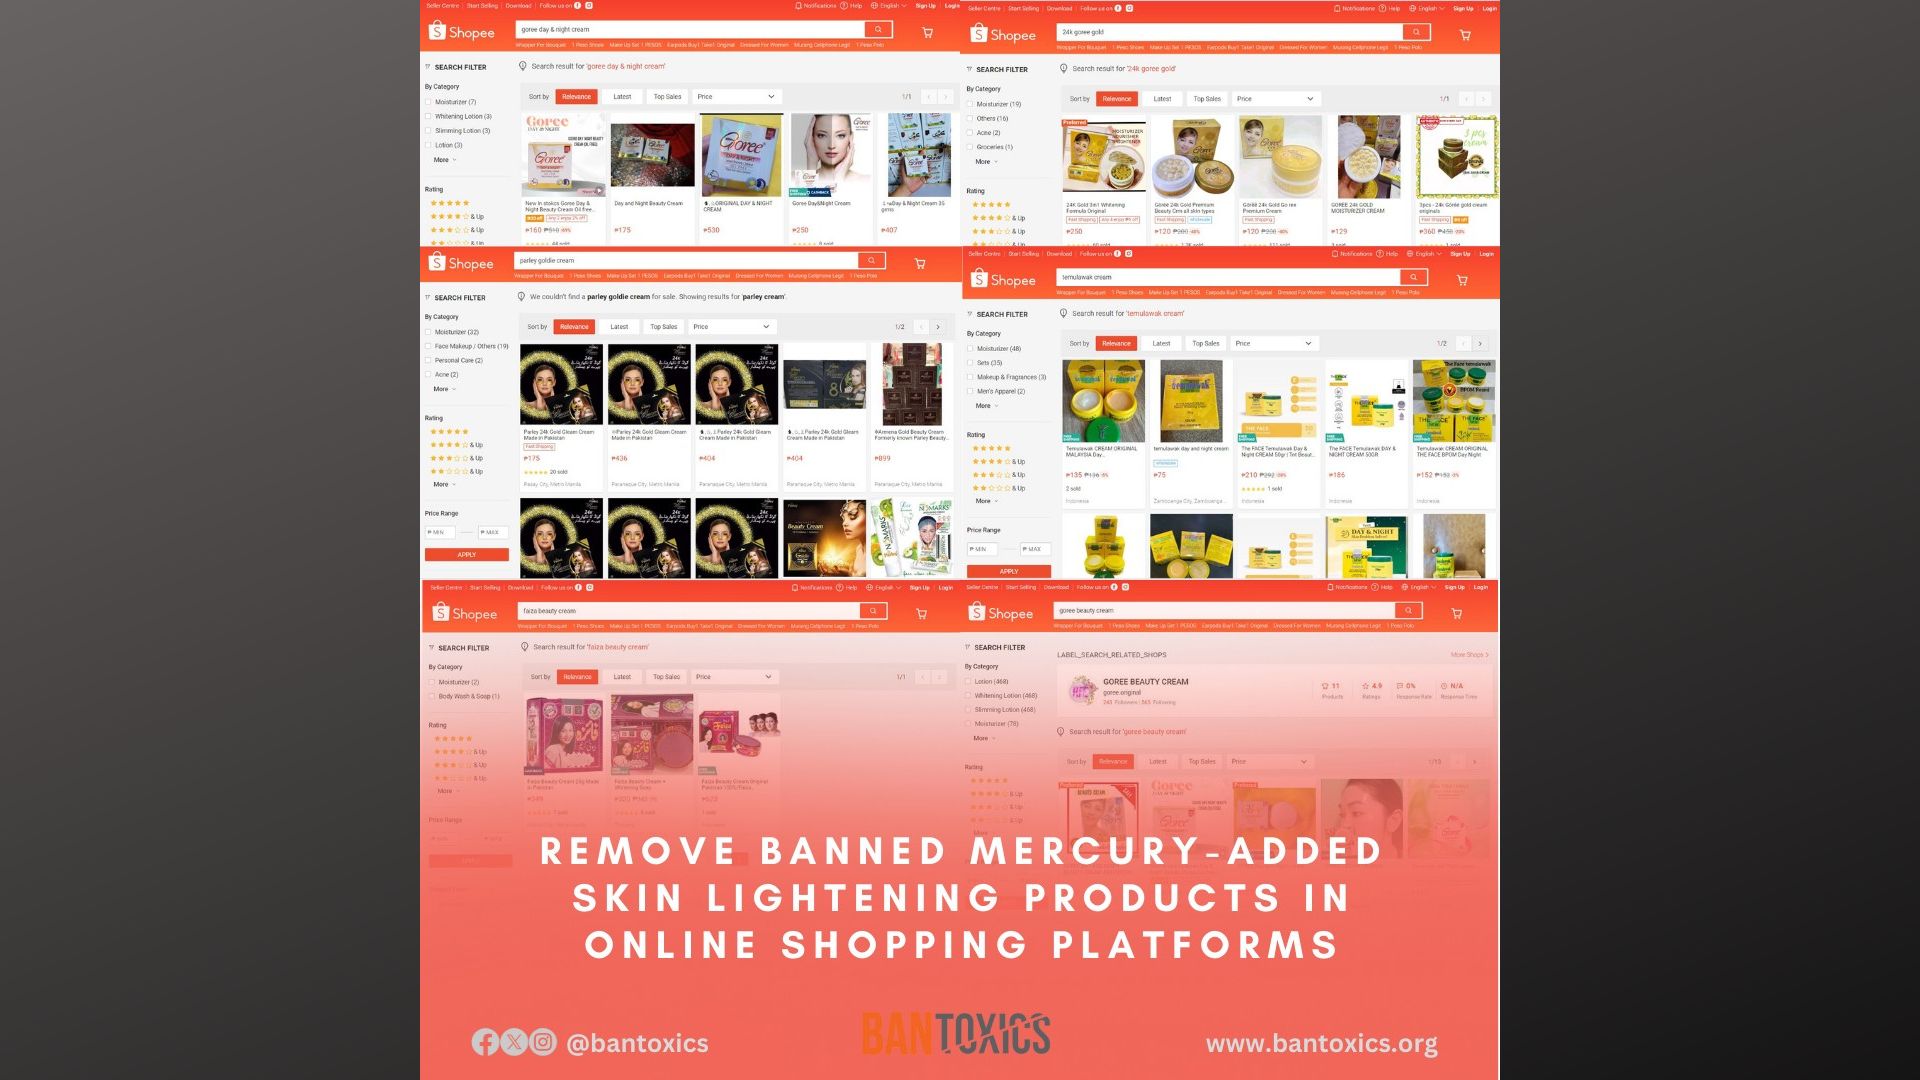 Skin lightening products na may taglay na mercury naglipana sa online shopping platforms ayon sa BAN Toxics